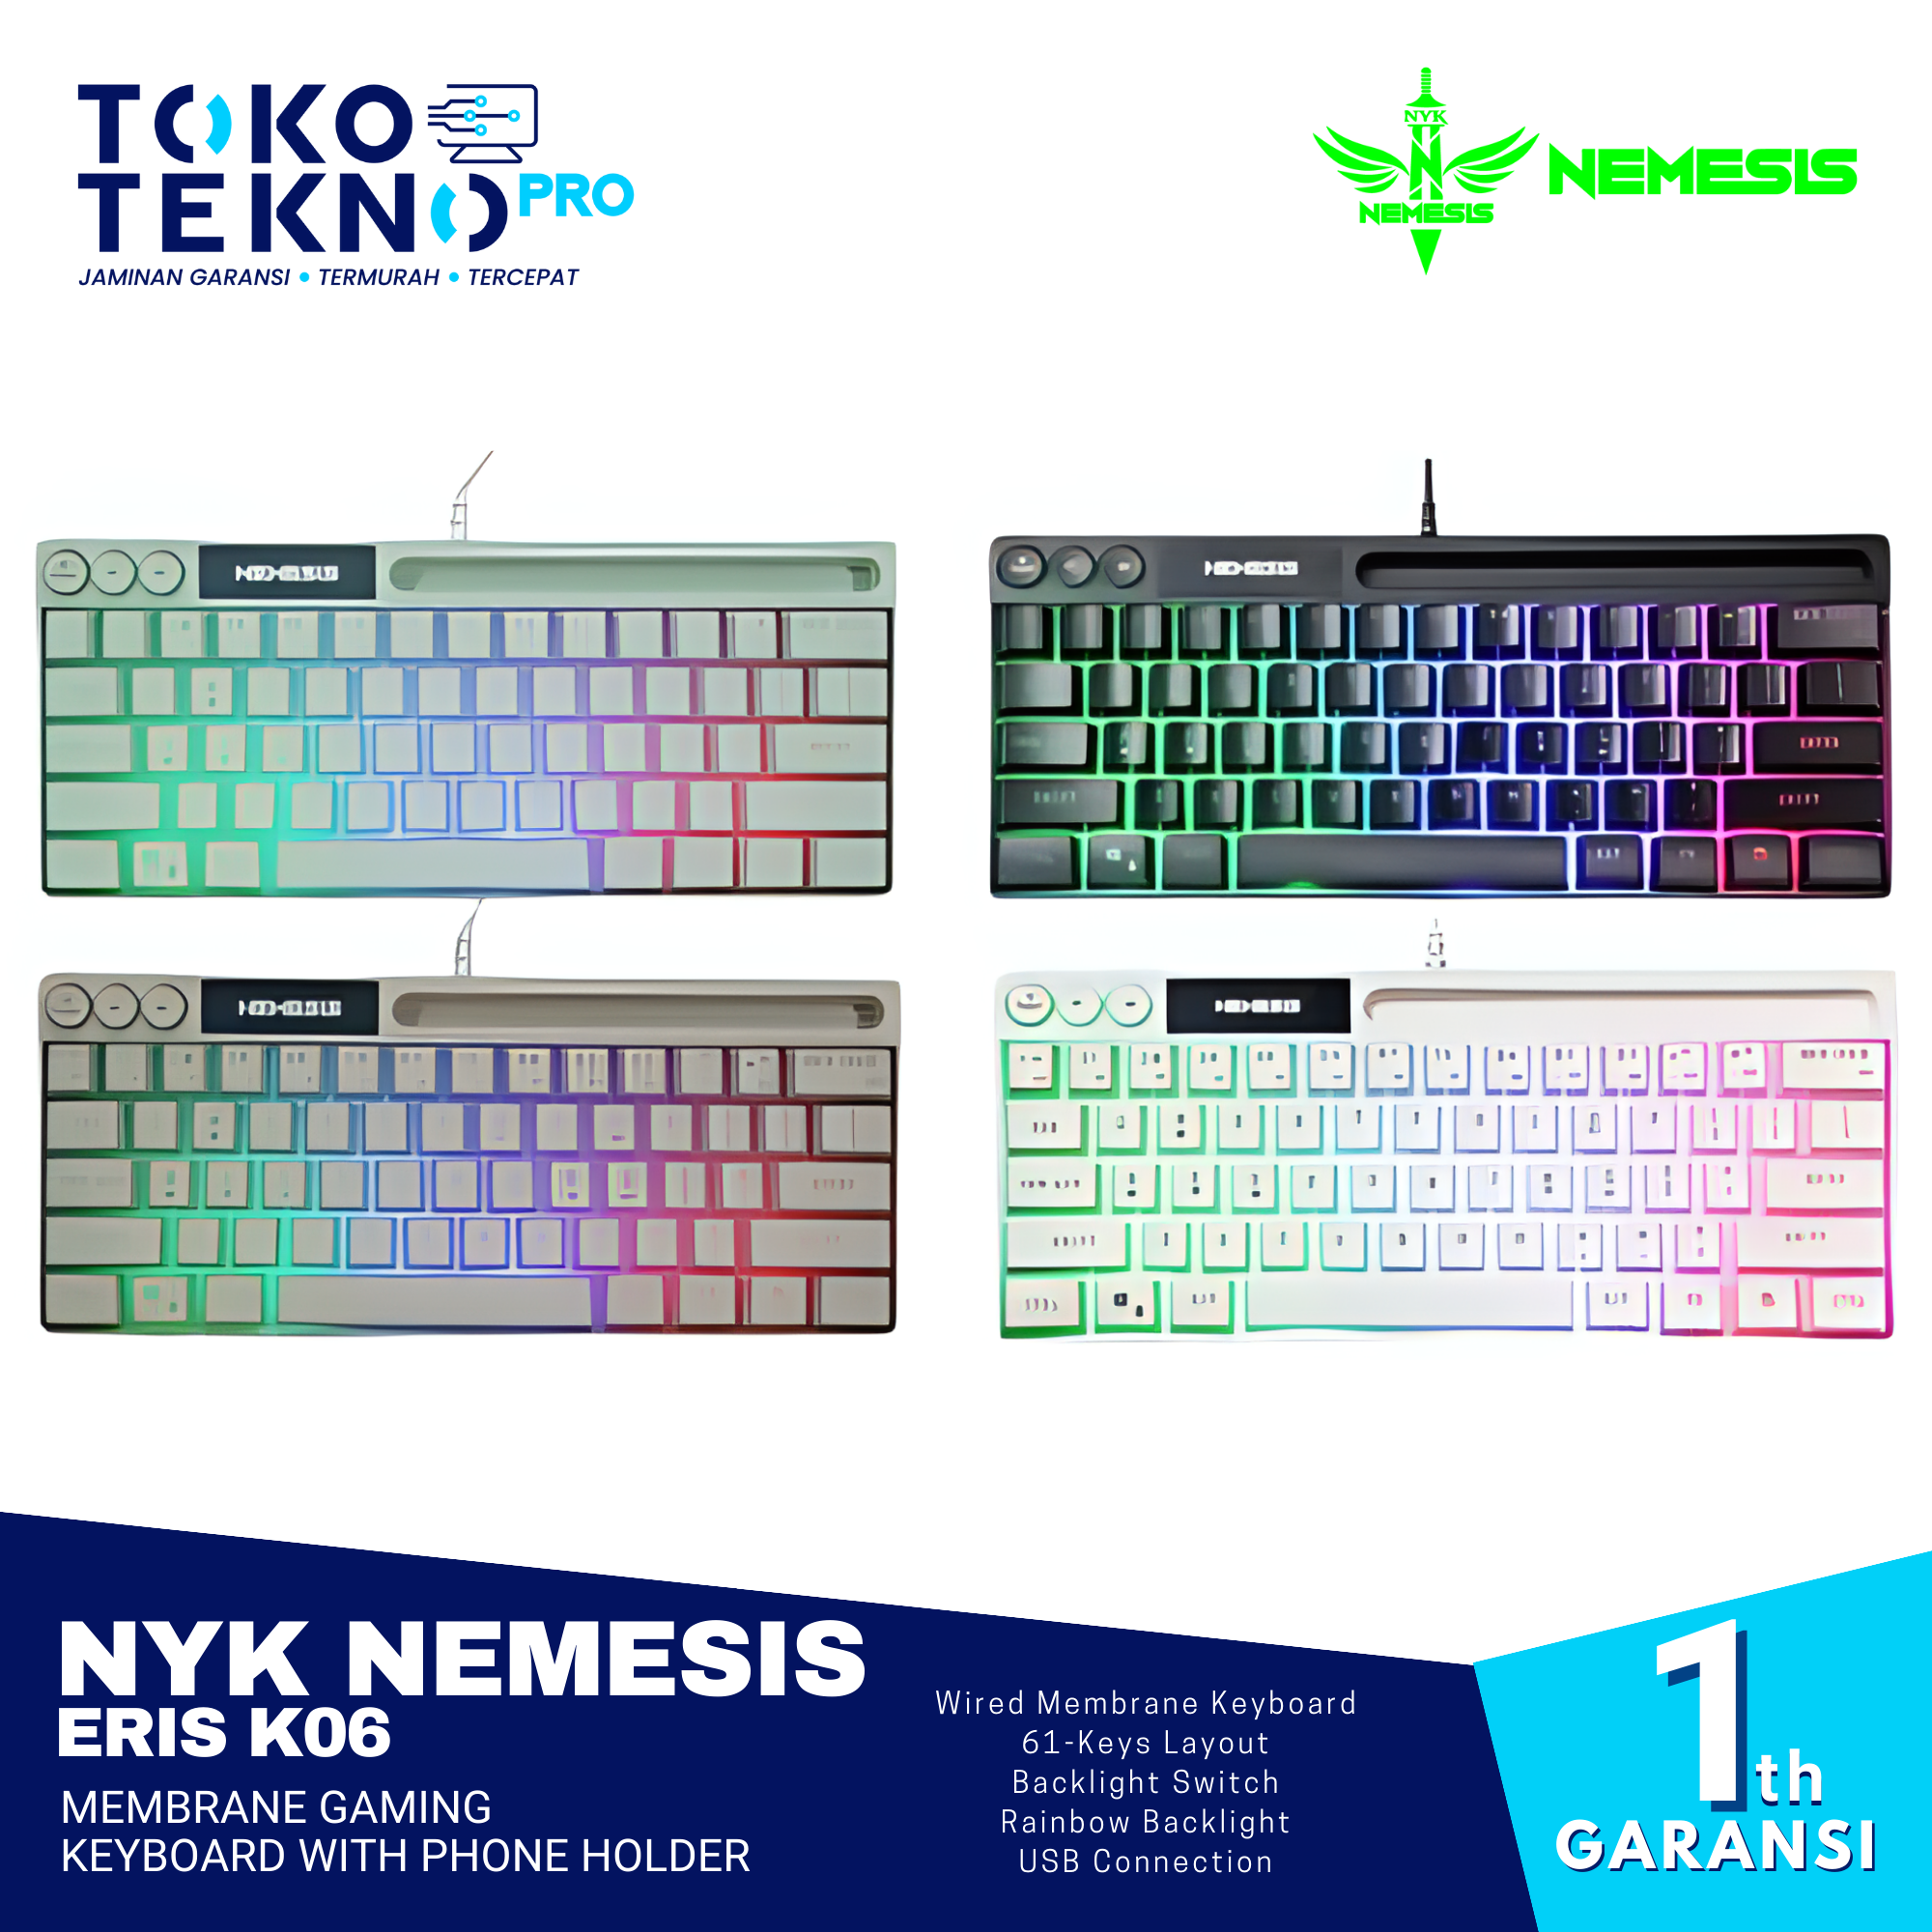 NYK Nemesis Eris K06 Membrane Gaming Keyboard With Phone Holder